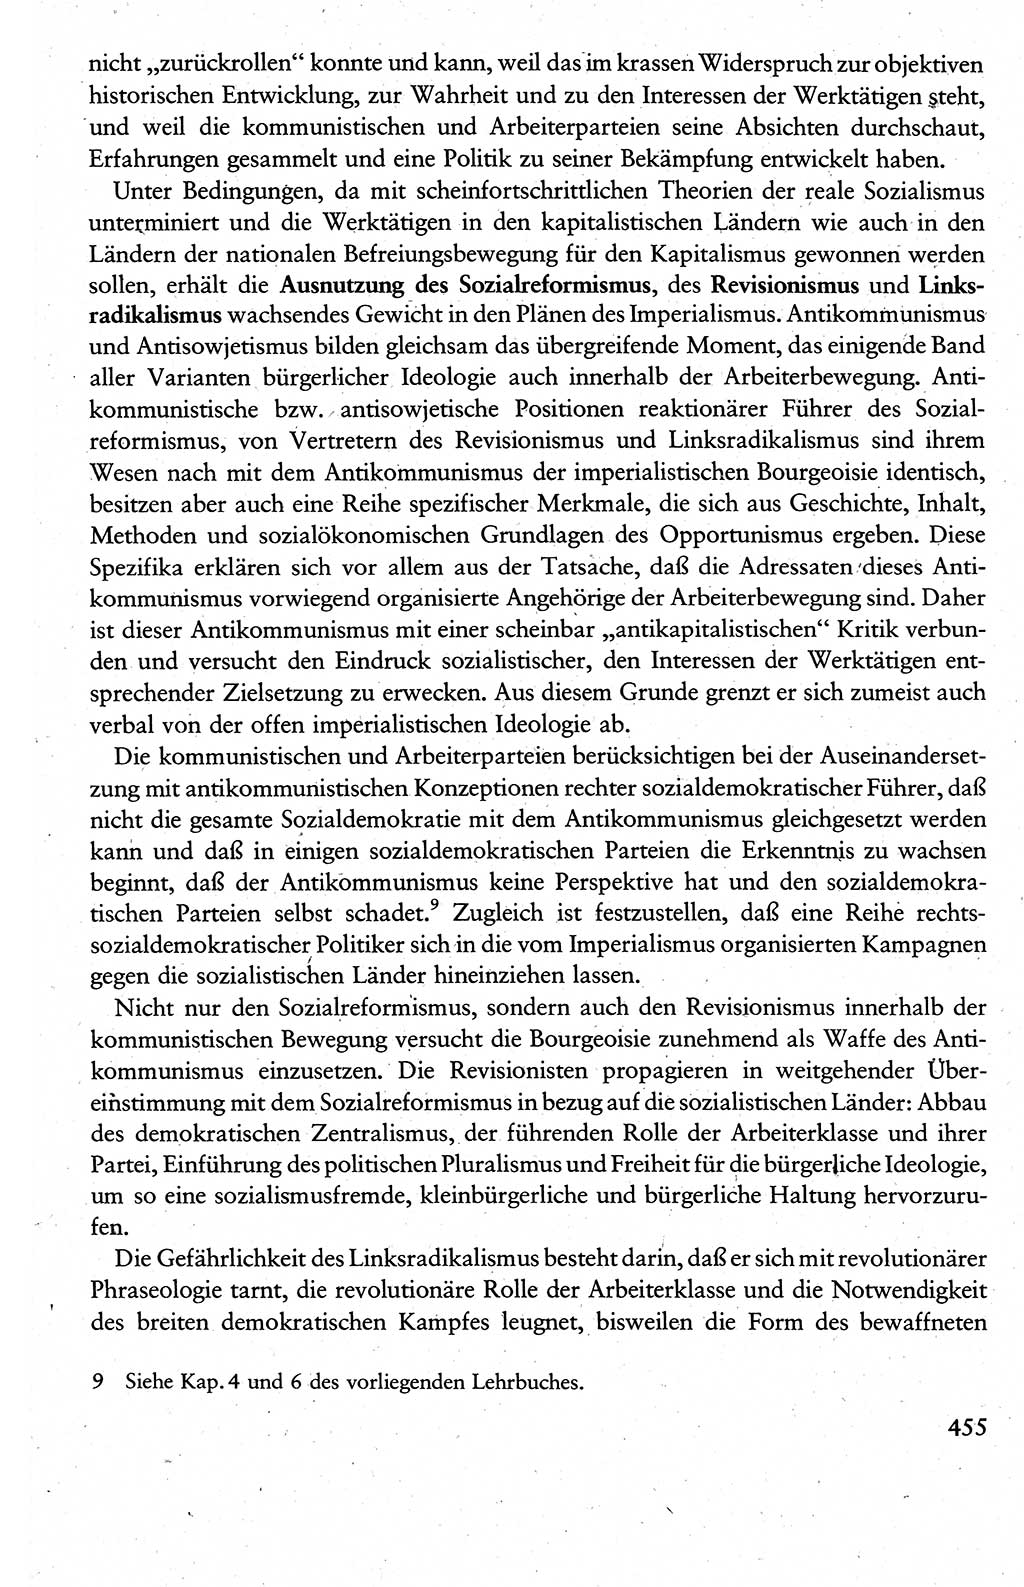 Wissenschaftlicher Kommunismus [Deutsche Demokratische Republik (DDR)], Lehrbuch für das marxistisch-leninistische Grundlagenstudium 1983, Seite 455 (Wiss. Komm. DDR Lb. 1983, S. 455)